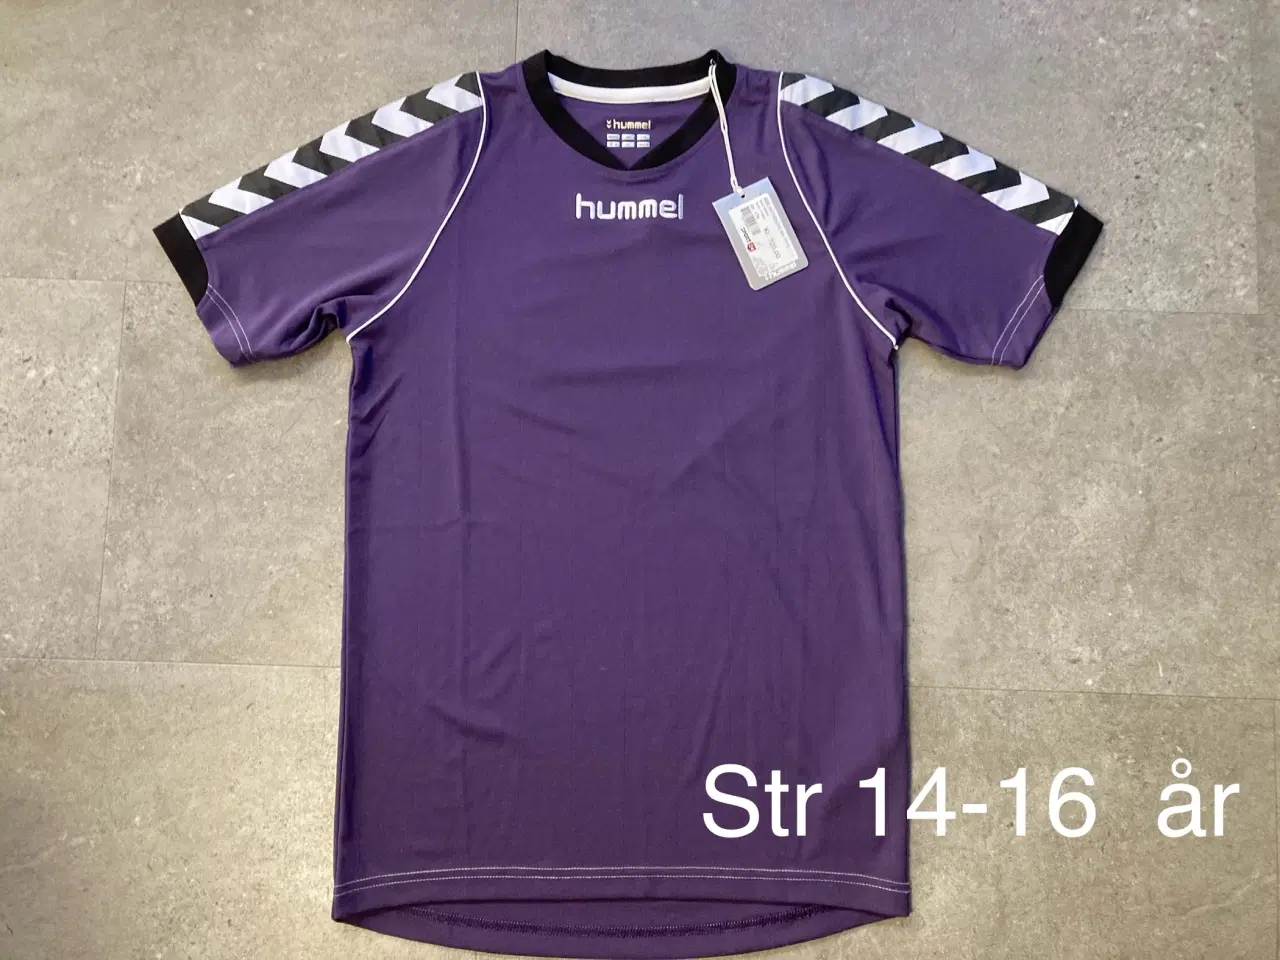 Billede 1 - Str 14-16 Hummel T-shirt. Ny med mærke